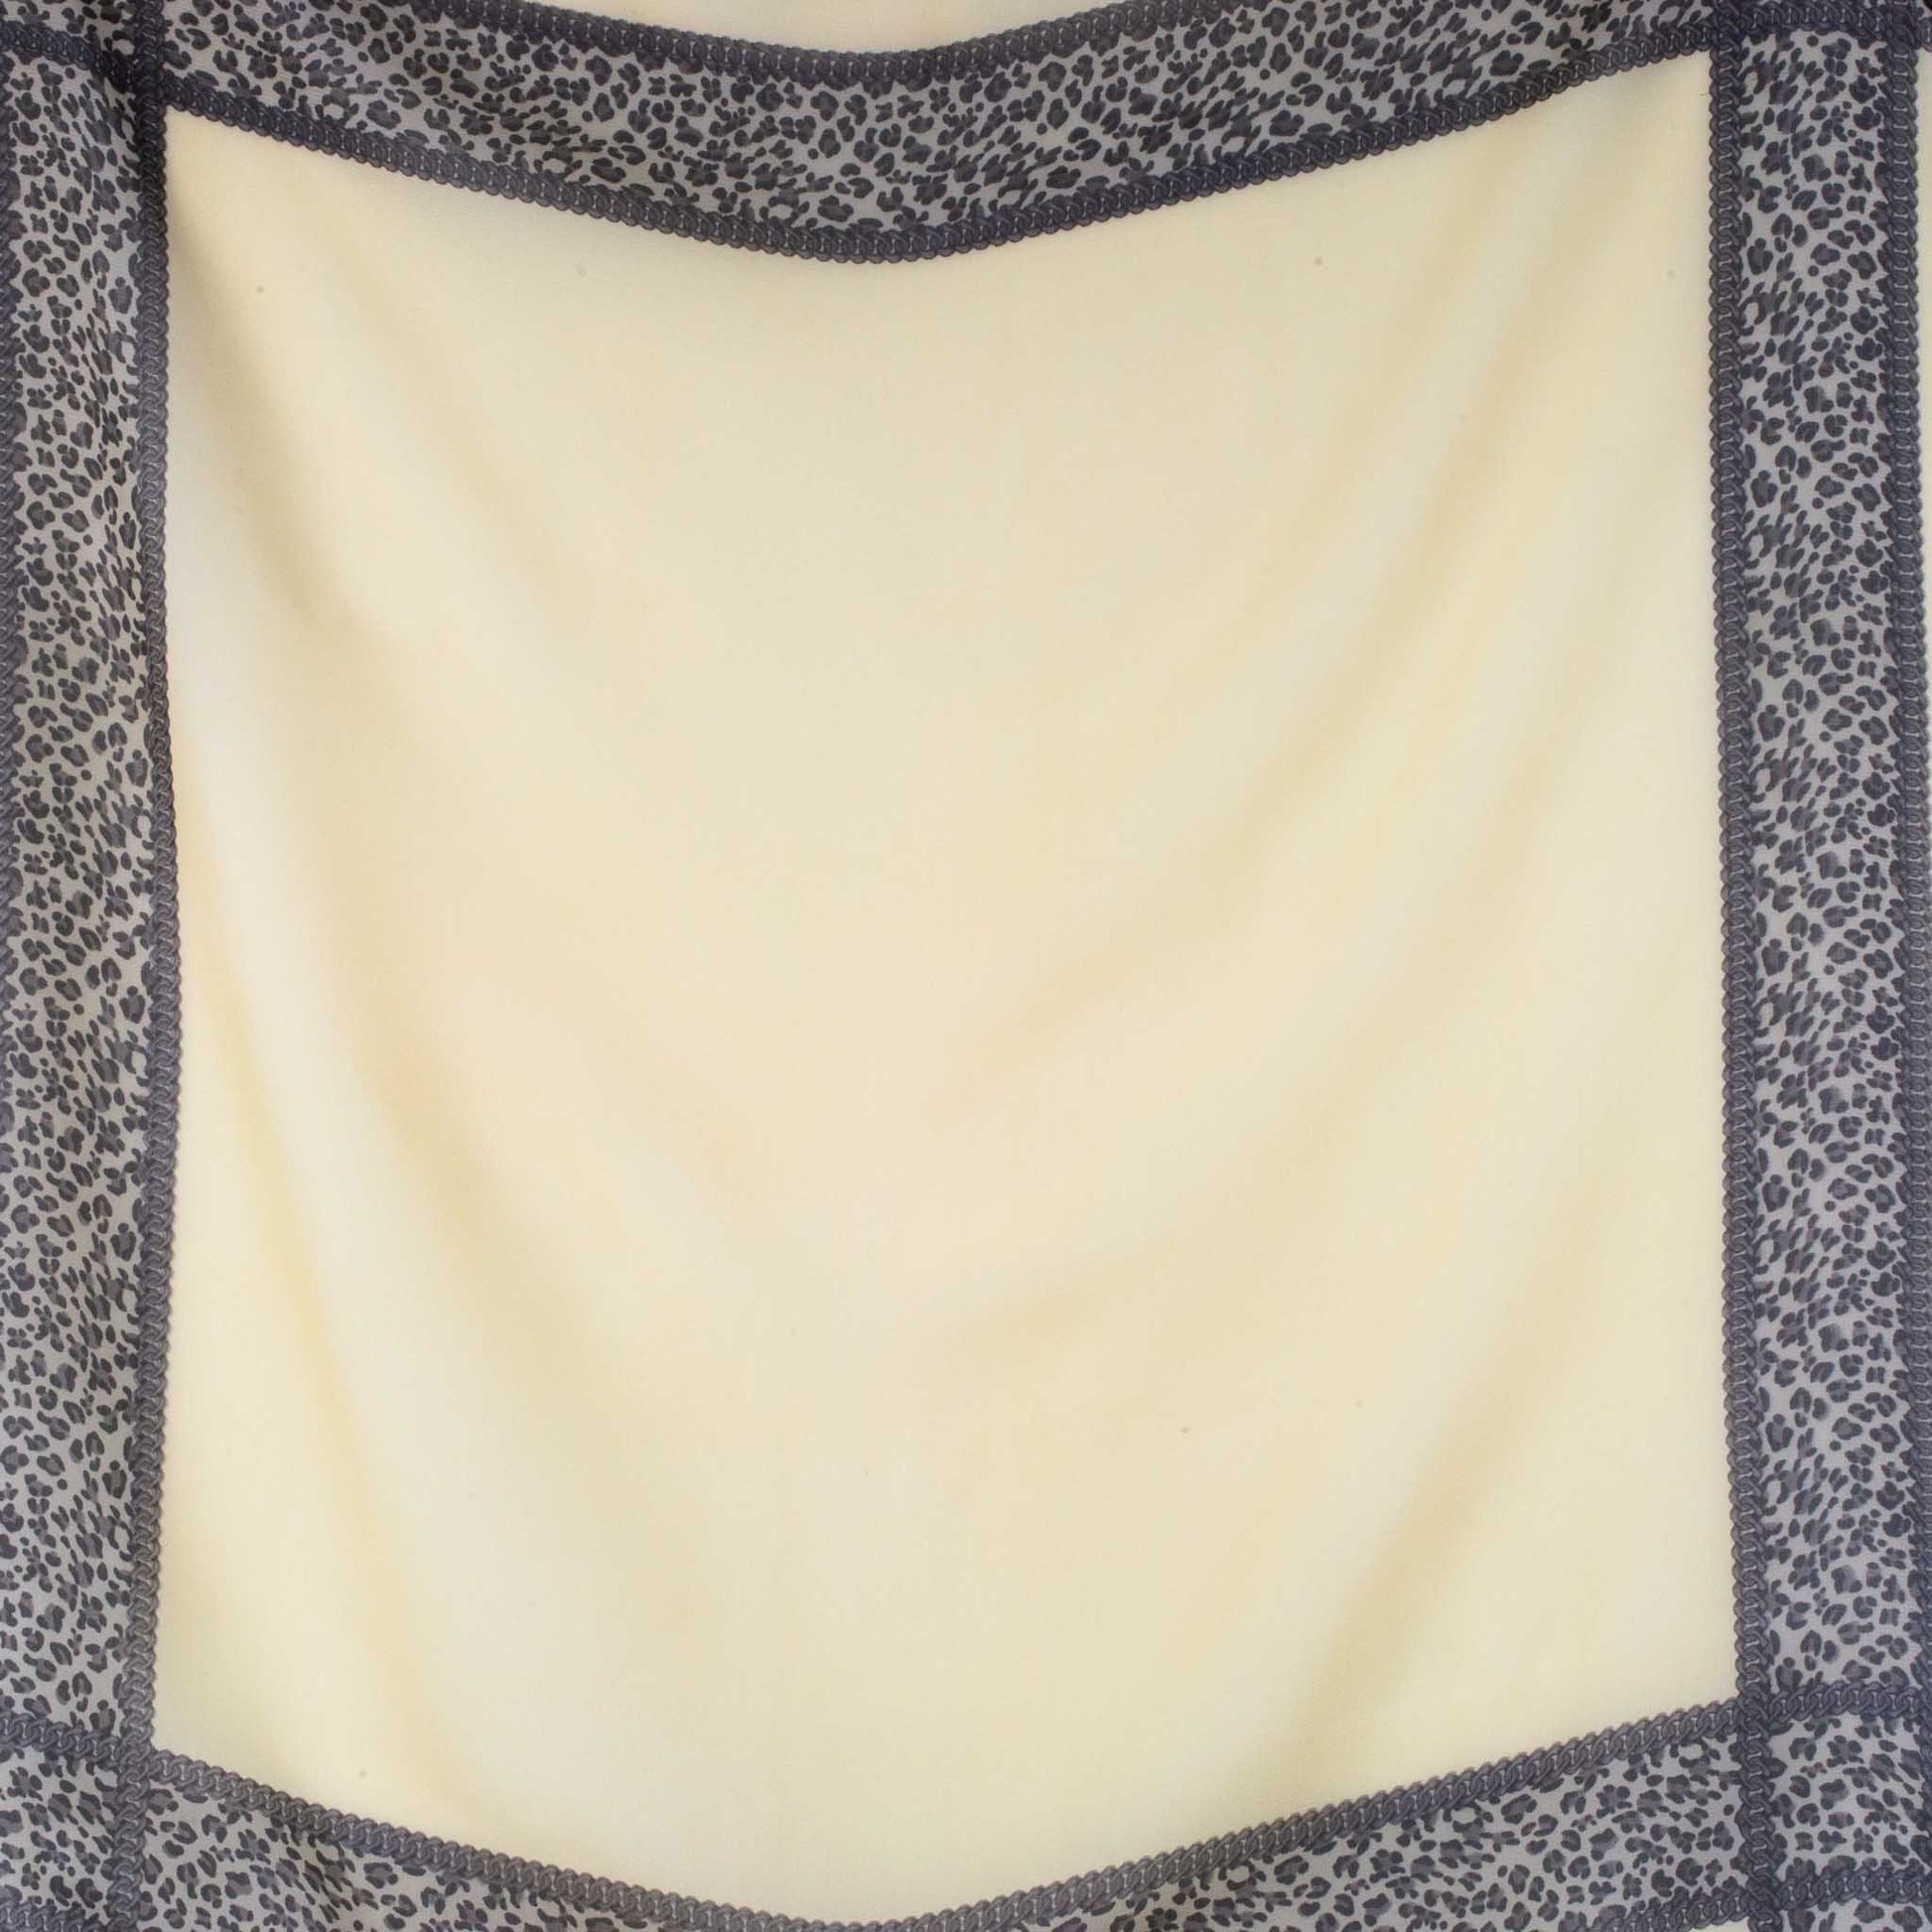 Eșarfă damă din mătase cu secțiuni animal print, 65 x 65 cm - Crem, Maro